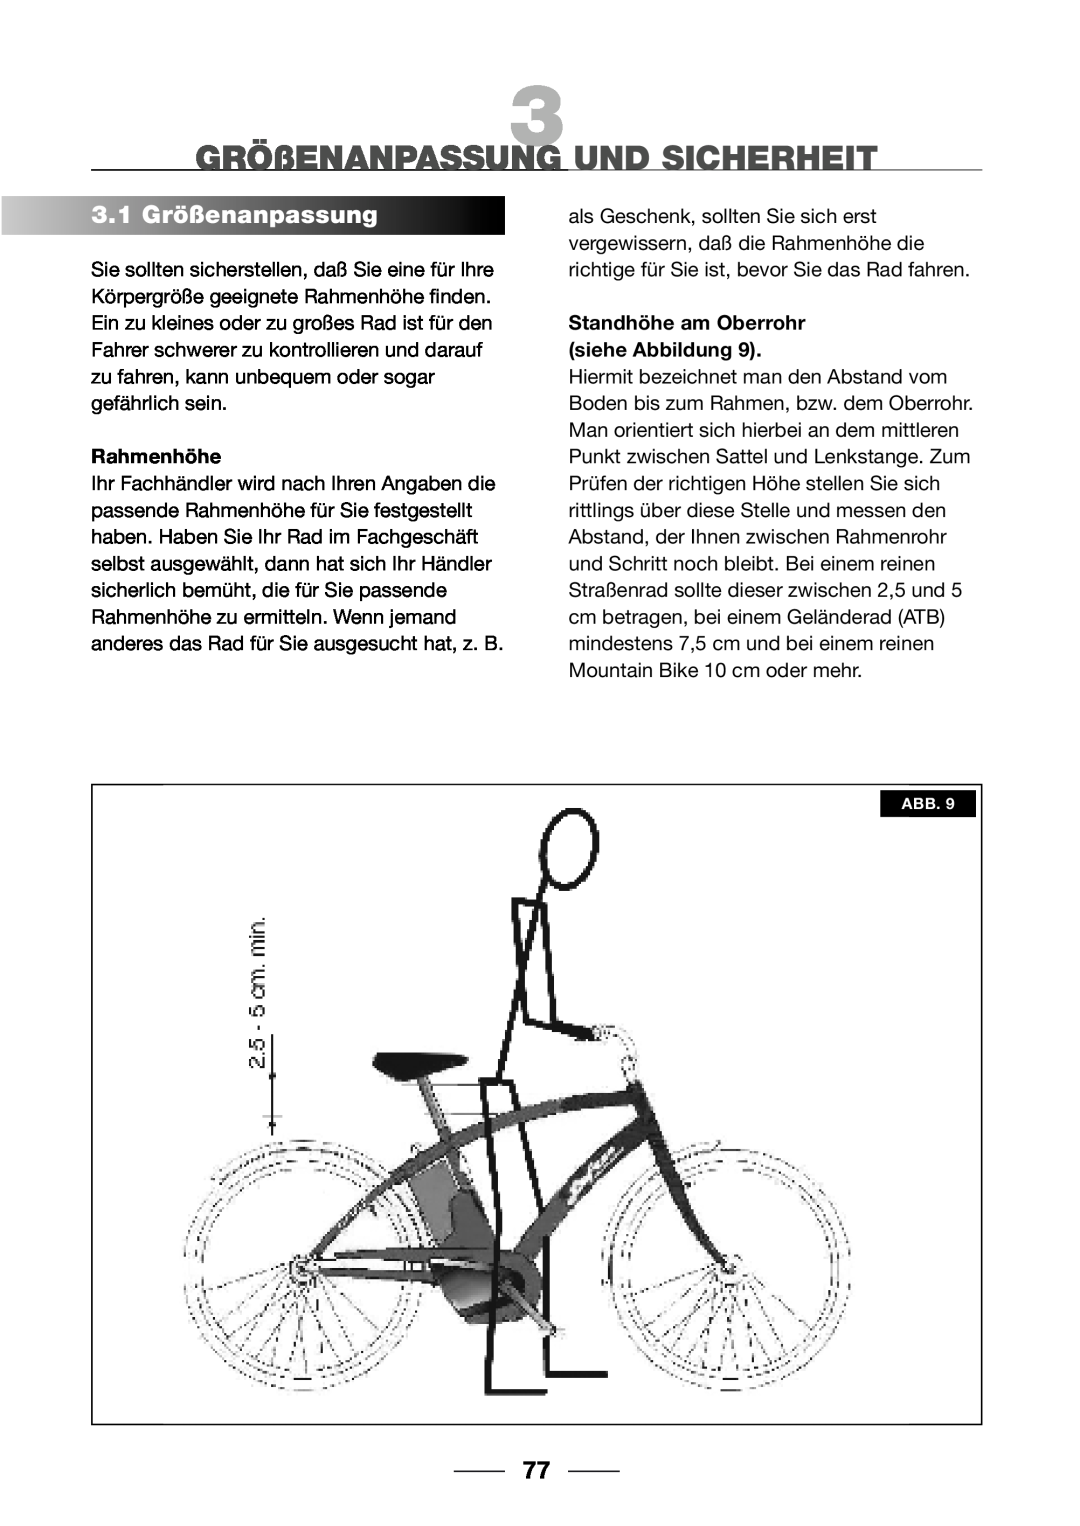 Giant 2002 Motorized Bicycle owner manual GRÖßENANPASSUNG UND SICHERHEIT, 3.1Größenanpassung, Rahmenhöhe 